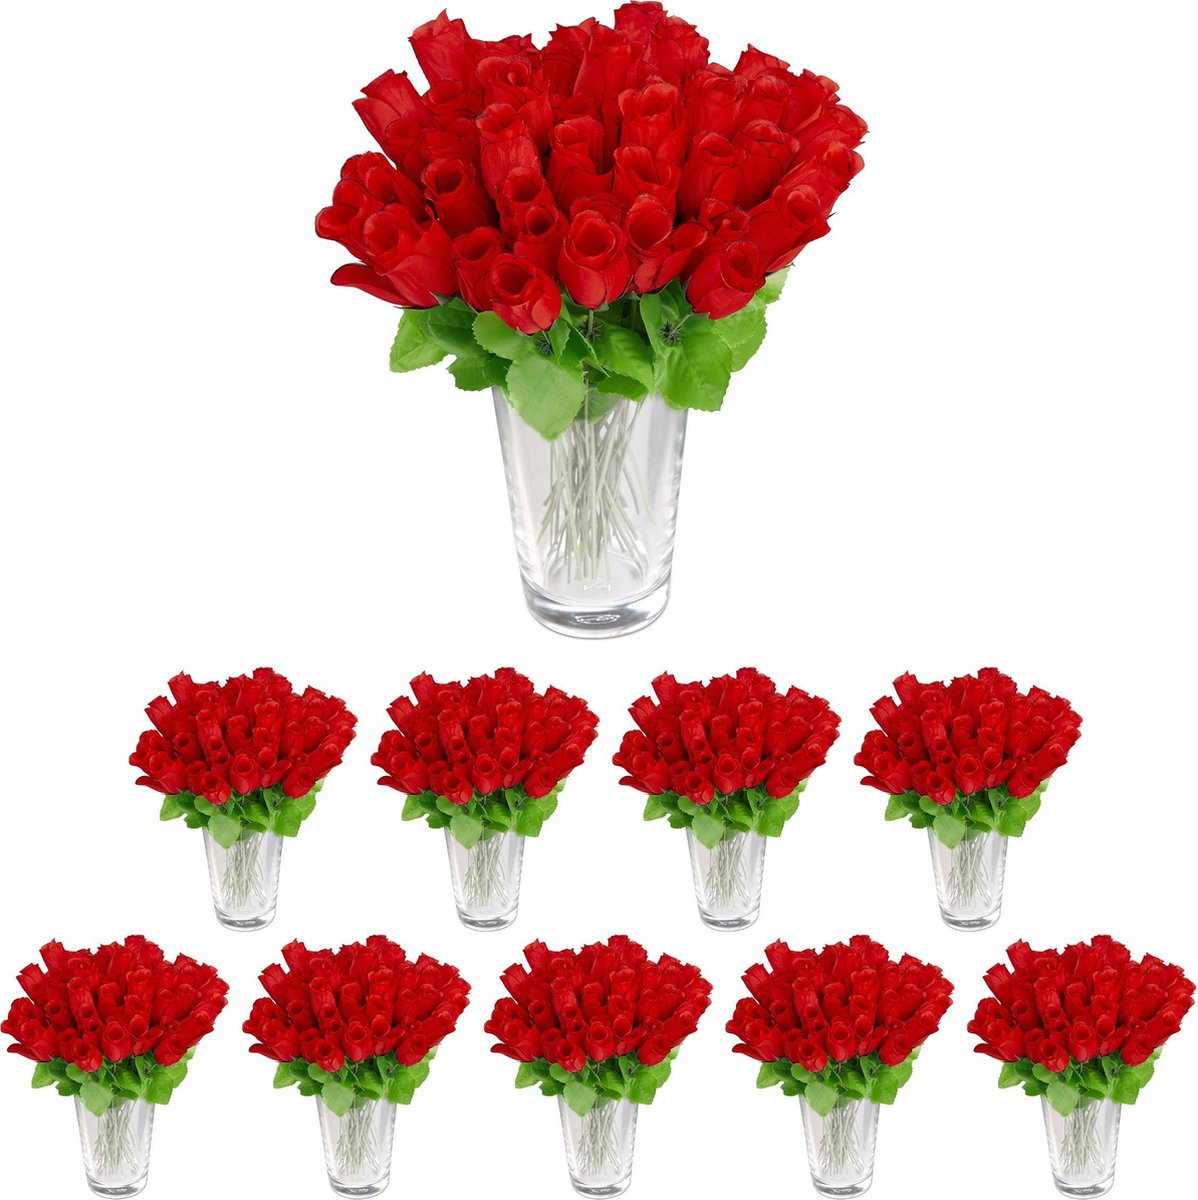 Relaxdays 480x kunstrozen rood kunstbloemen decoratie nep bloemen